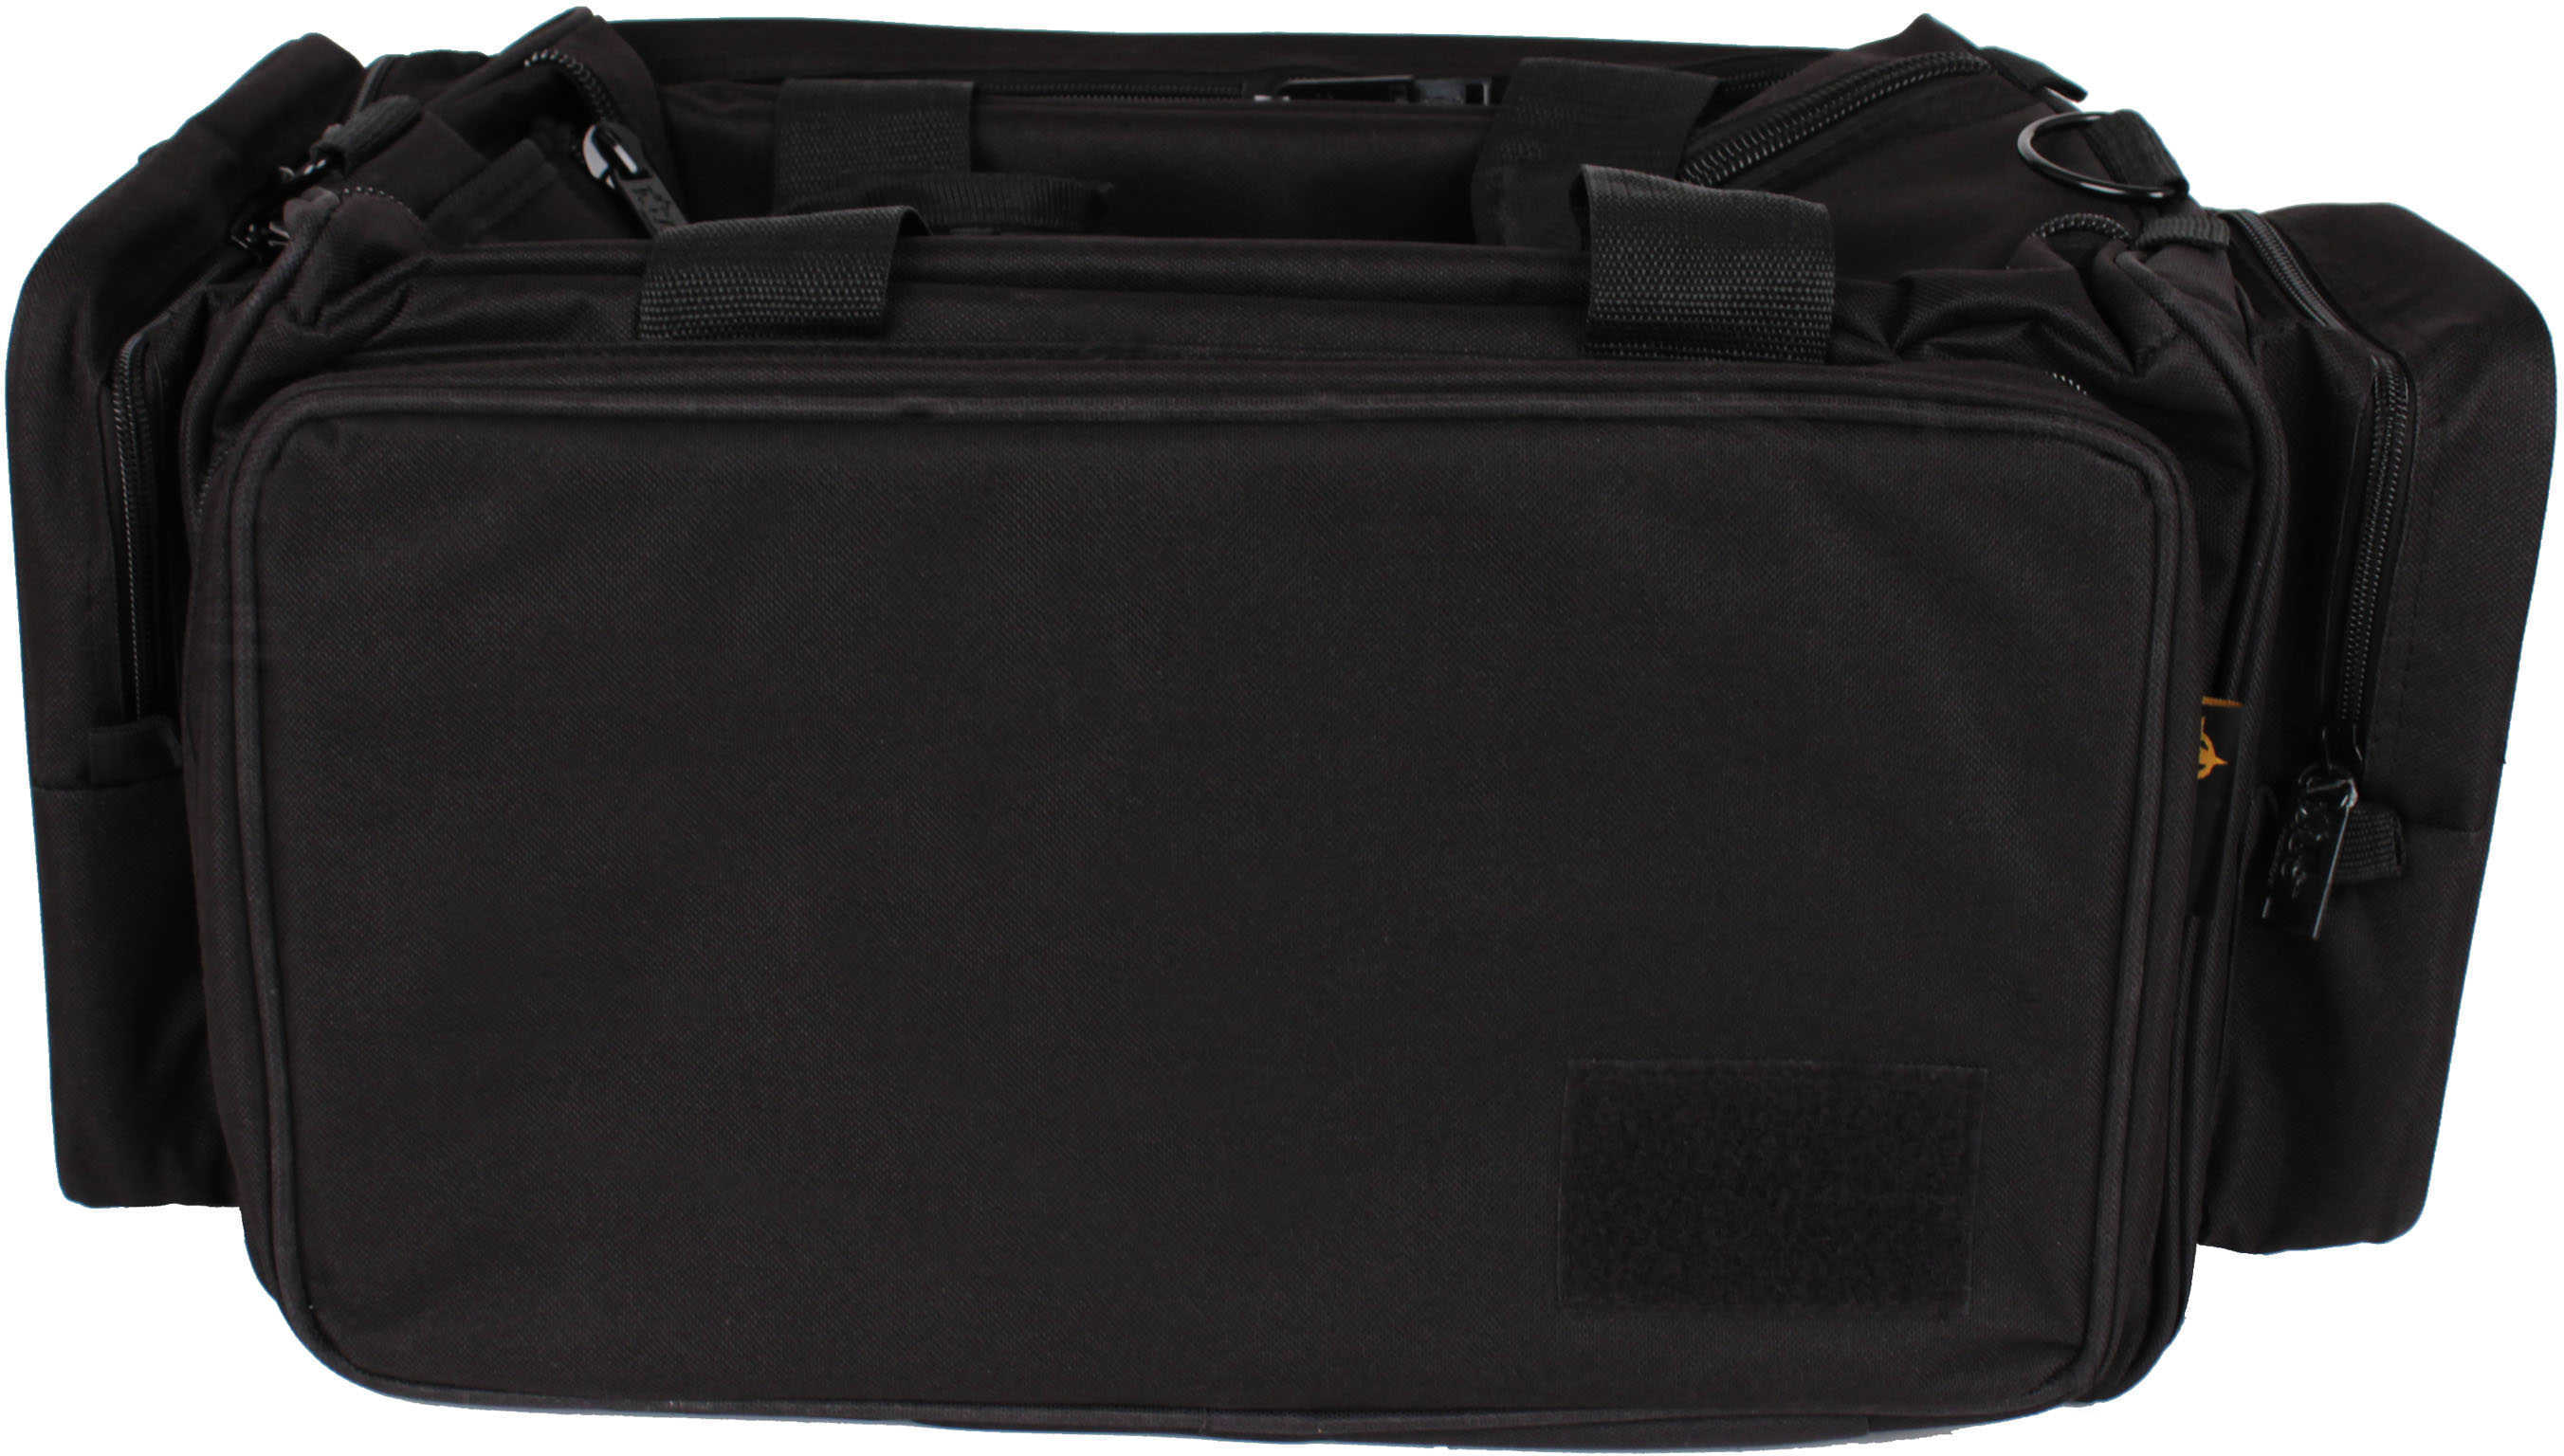 US Peacekeeper s Competitor Range Bag Black 24inx12inx11.5in N55111